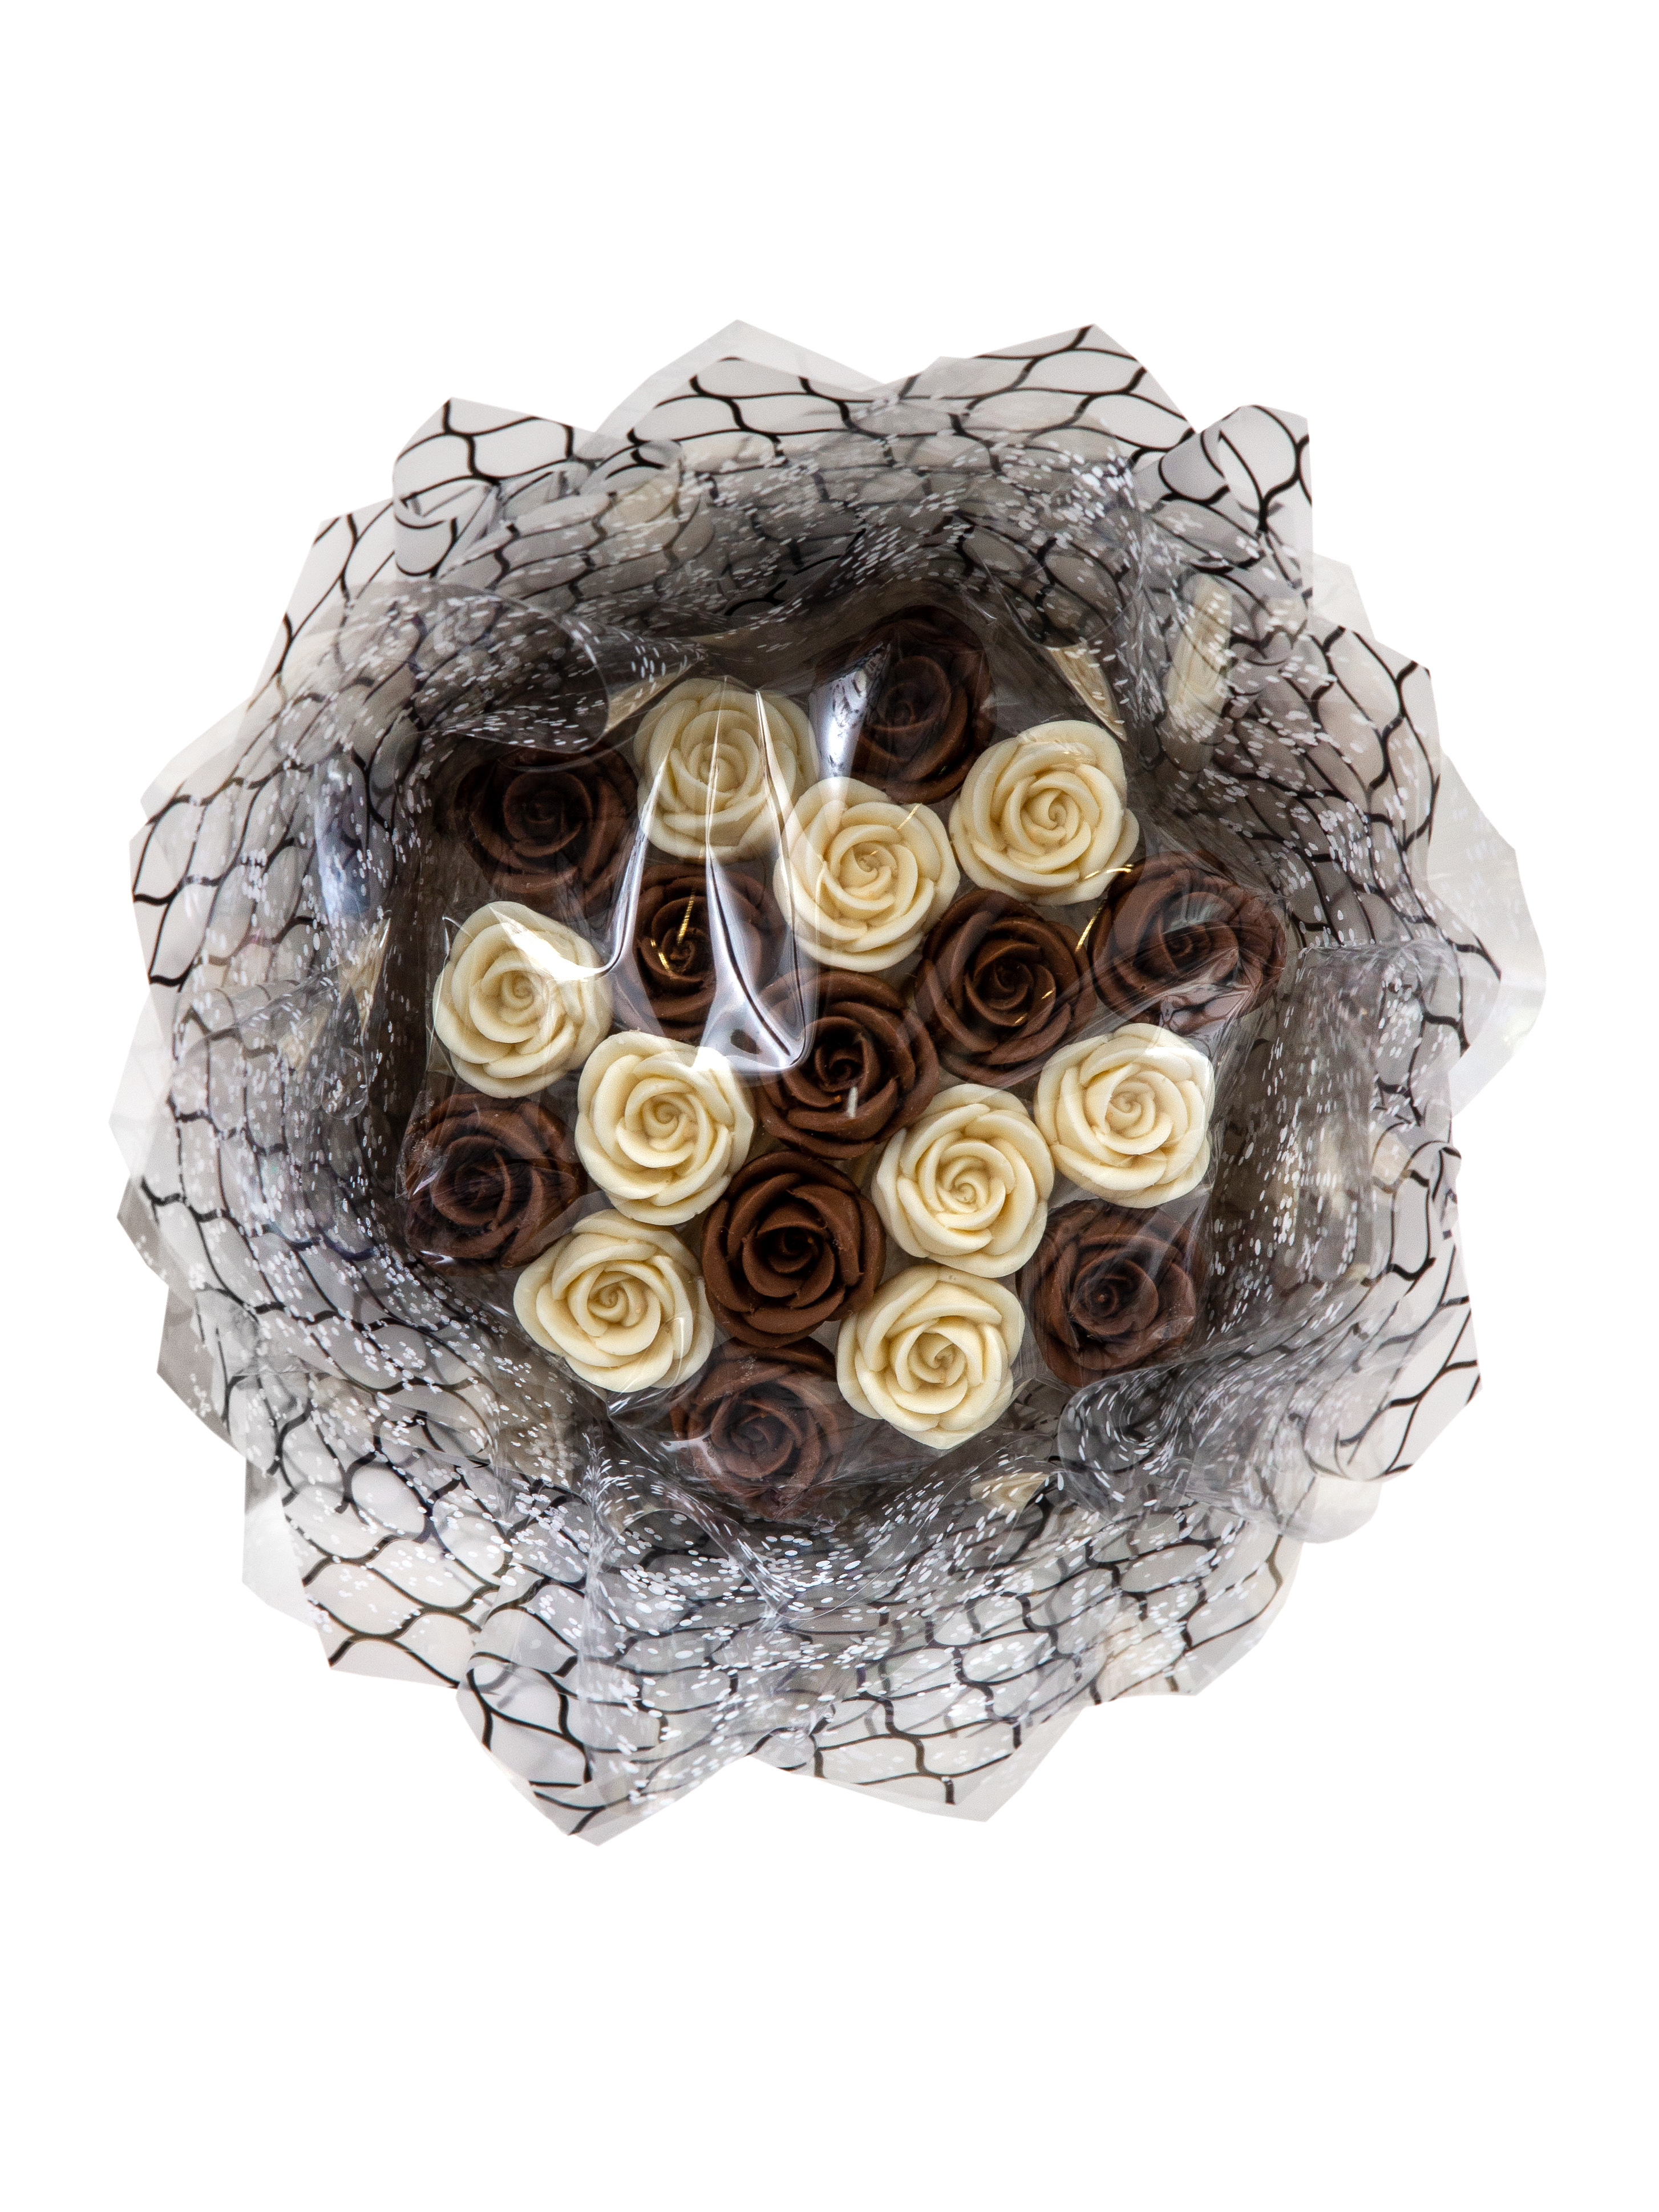 Шоколадный букет Звездный сюрприз из 19 роз, 200 г